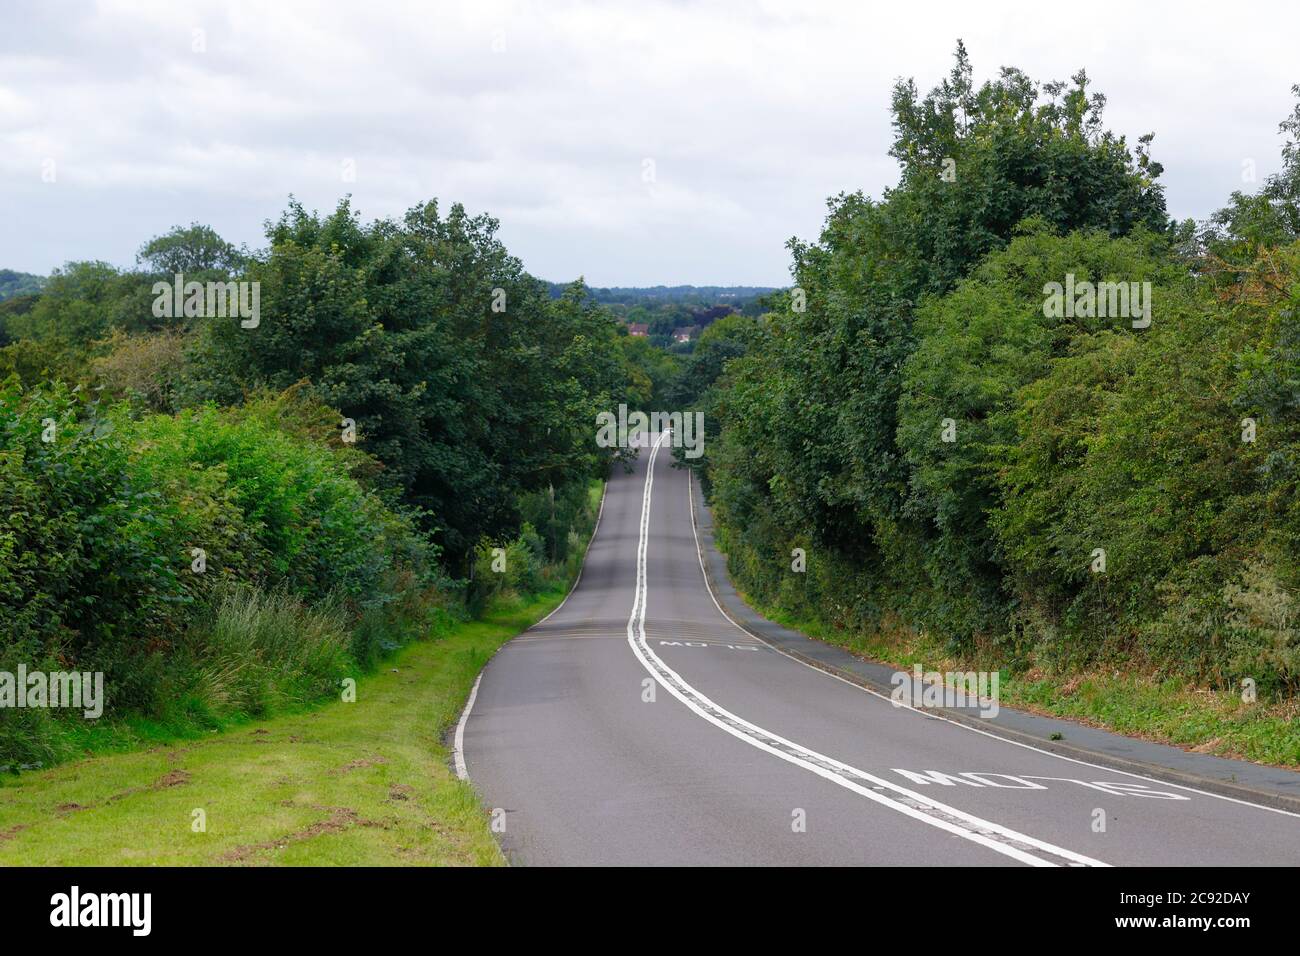 Die A642 Wakefield Road in Svillington. Dieser Abschnitt der Straße zwischen Jinny Moor Lane & Svillington Lane ist ein Unfall schwarzen Fleck. Stockfoto